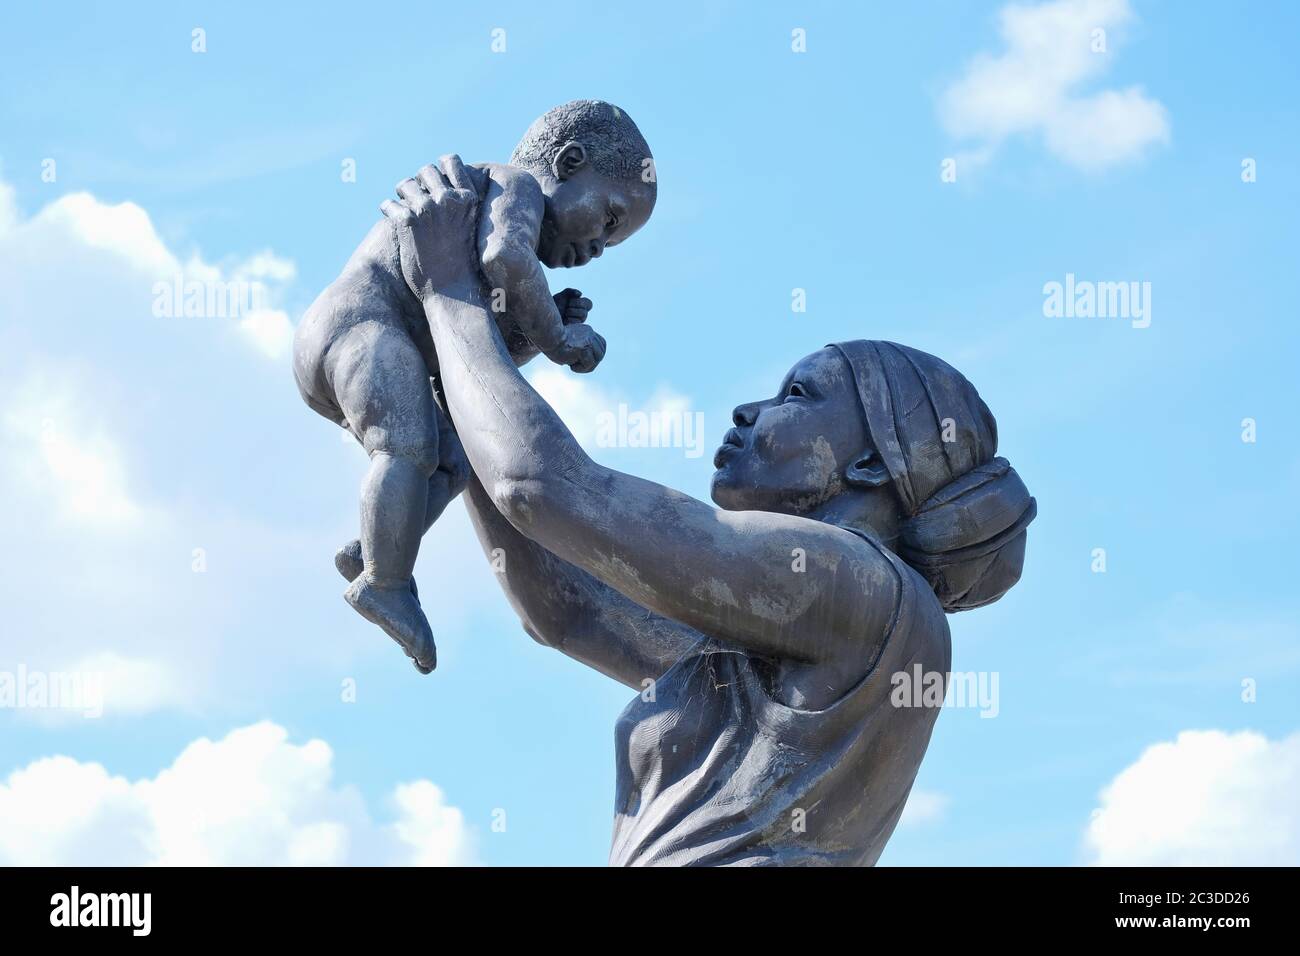 La statua della Donna di bronzo, raffigurante una donna afro-caraibica e un bambino tenuto in aloft è detto essere il primo del relativo genere in esposizione permanente in Inghilterra. Foto Stock